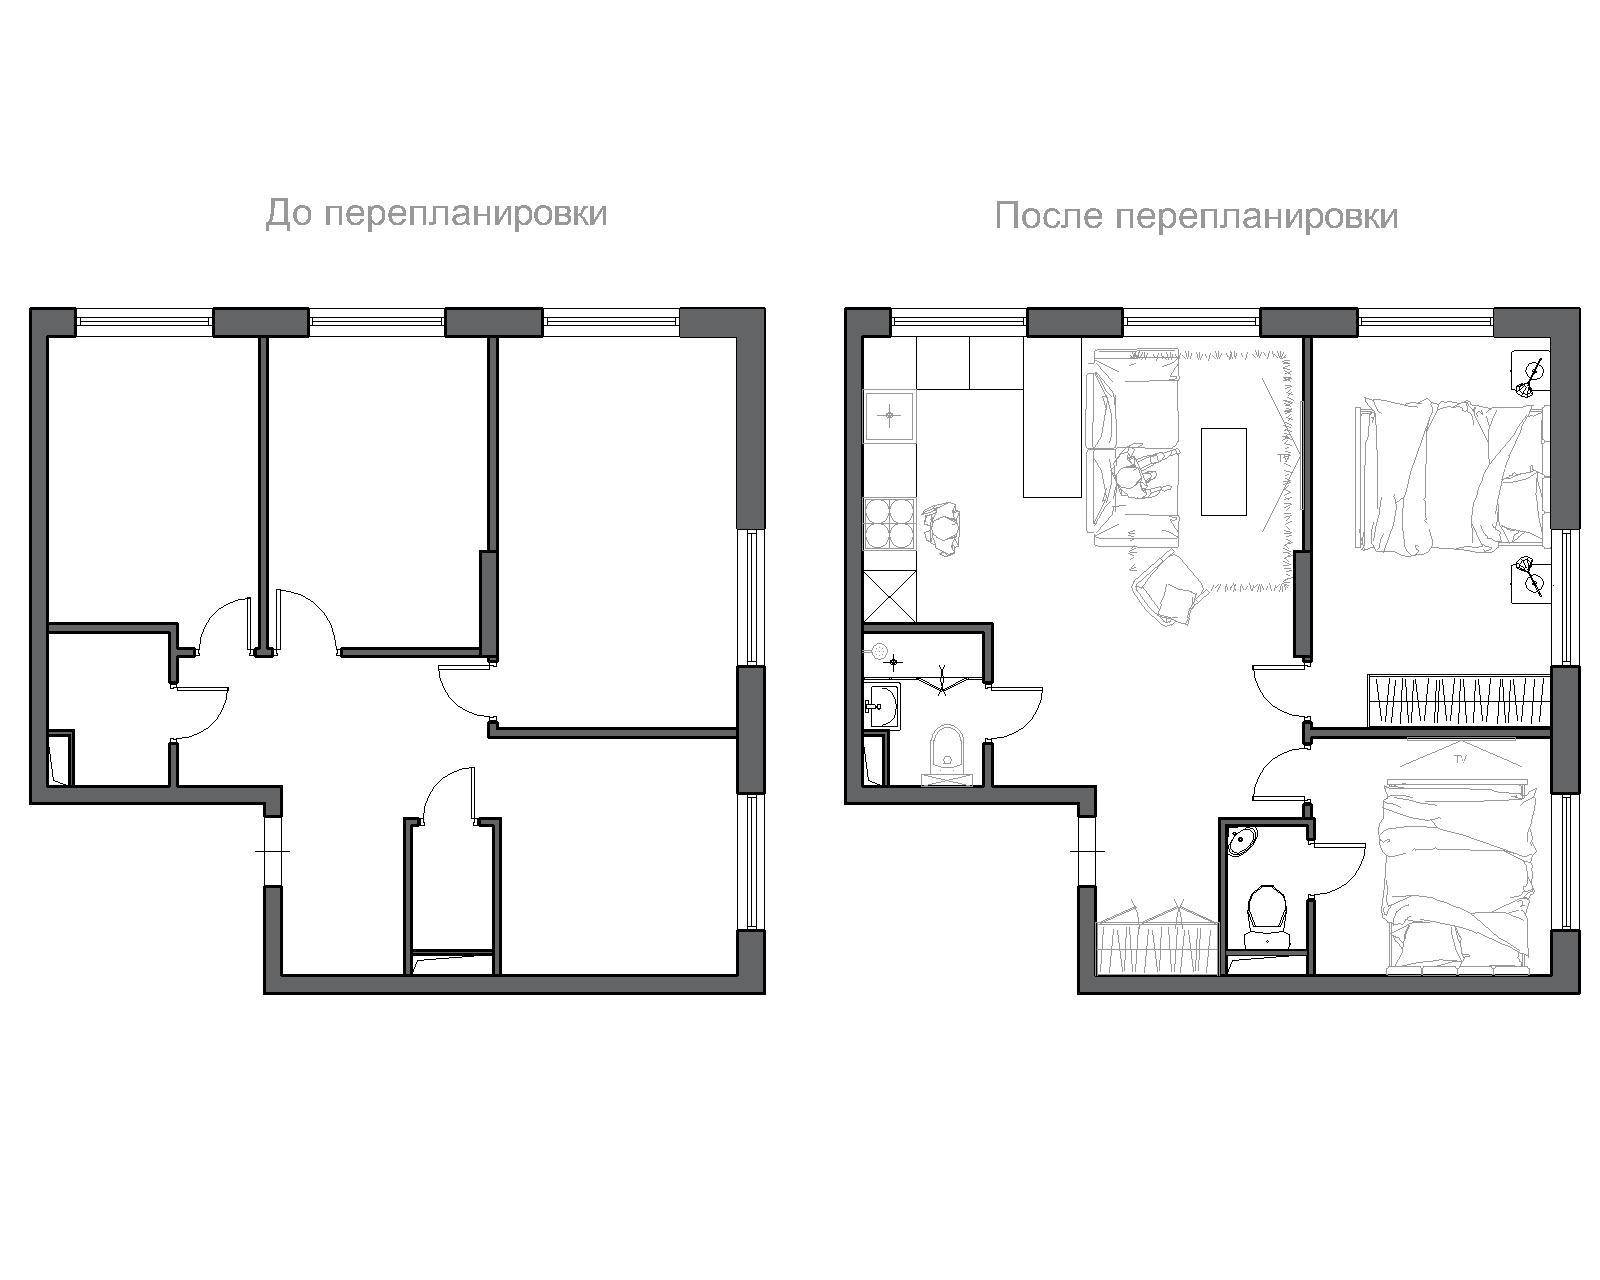 Как сделать проект перепланировки квартиры самостоятельно?